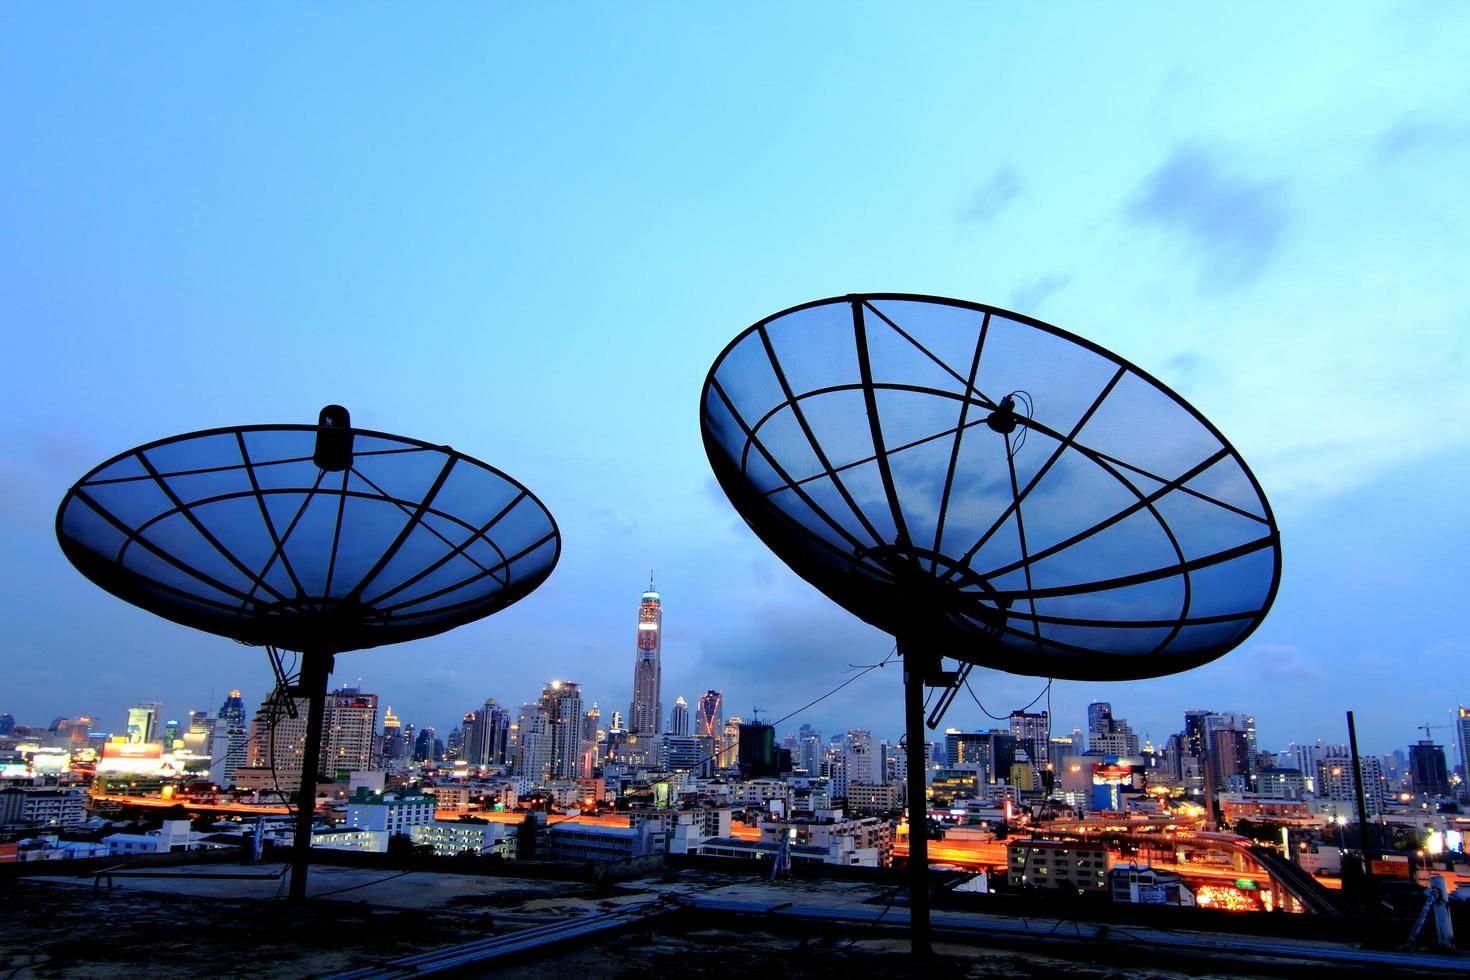 zwarte antenne communicatie schotelantenne boven avondrood in stadsgezicht foto